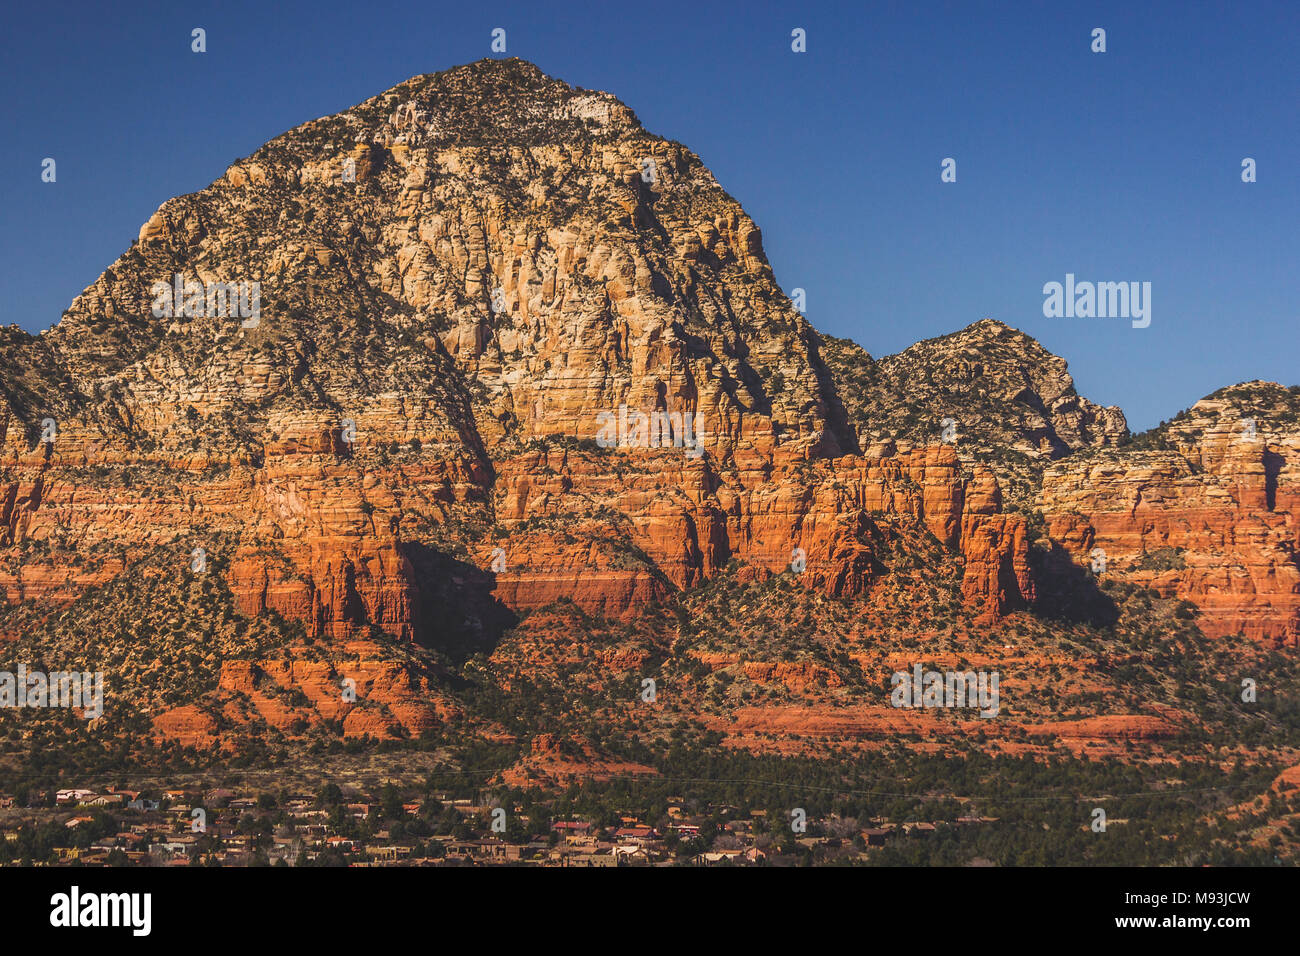 Capitol impressionnante butte (aka Thunder Mountain) s'élevant au-dessus de la formation de red rock West Sedona, Arizona avec ciel bleu clair sur une journée ensoleillée Banque D'Images